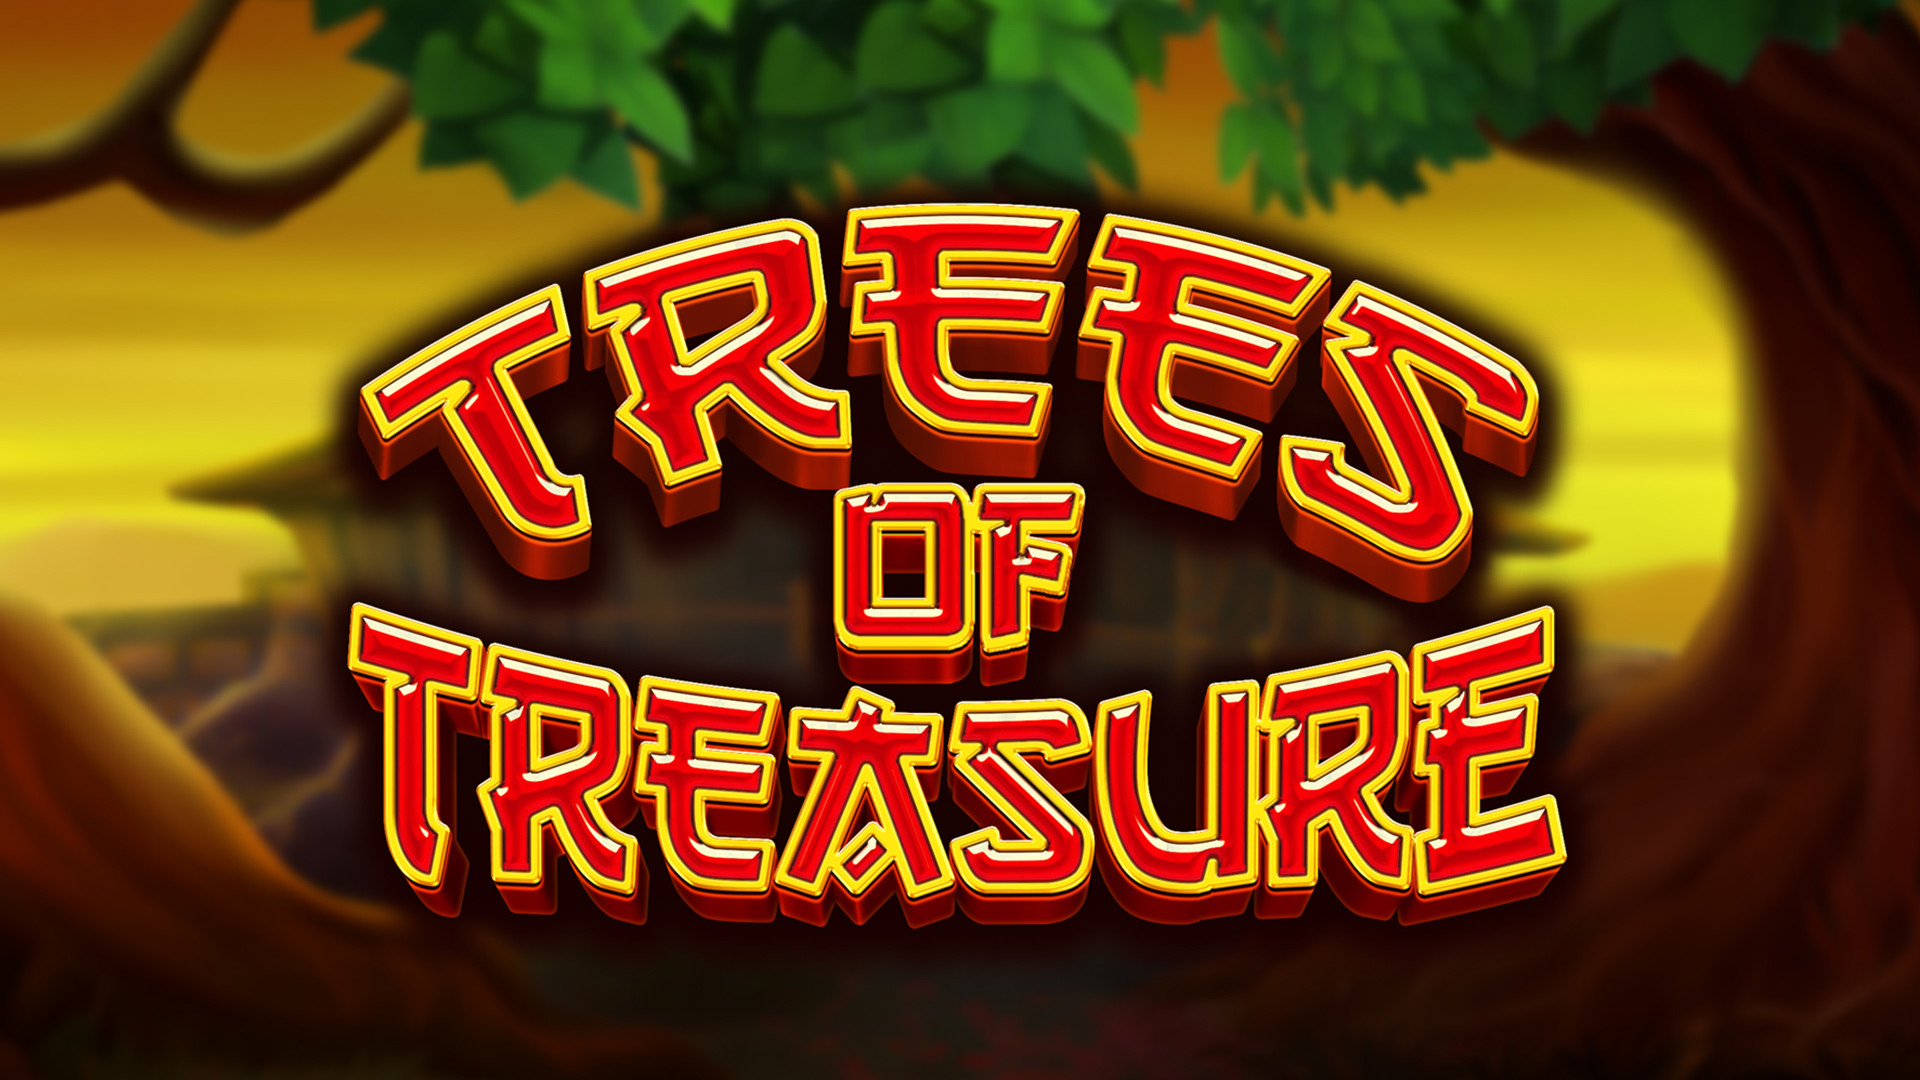 Trees of Treasure